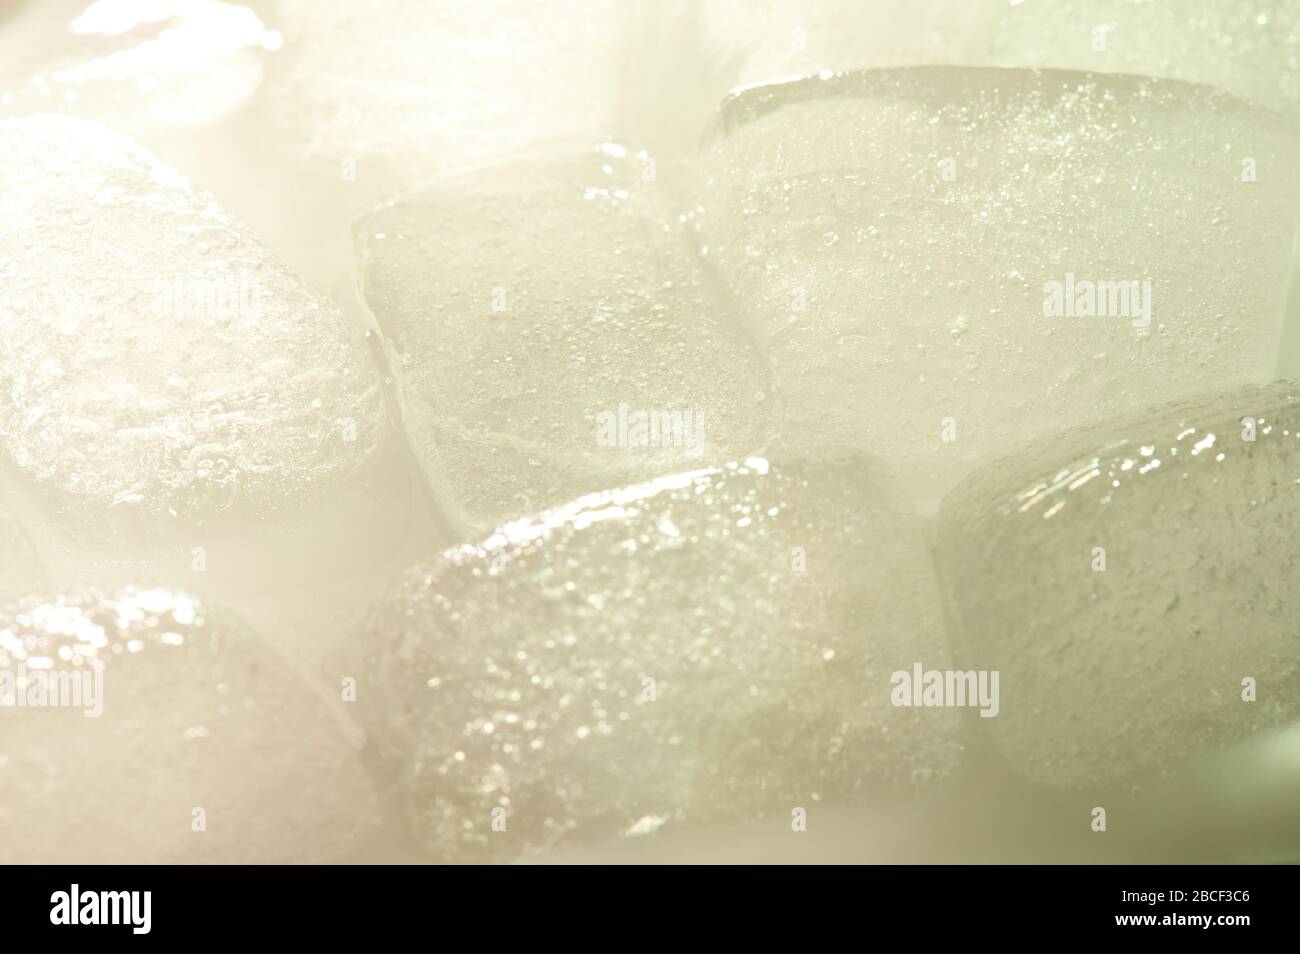 Vista de primer plano del hielo fundido con reflejo de la luz de fondo Foto de stock